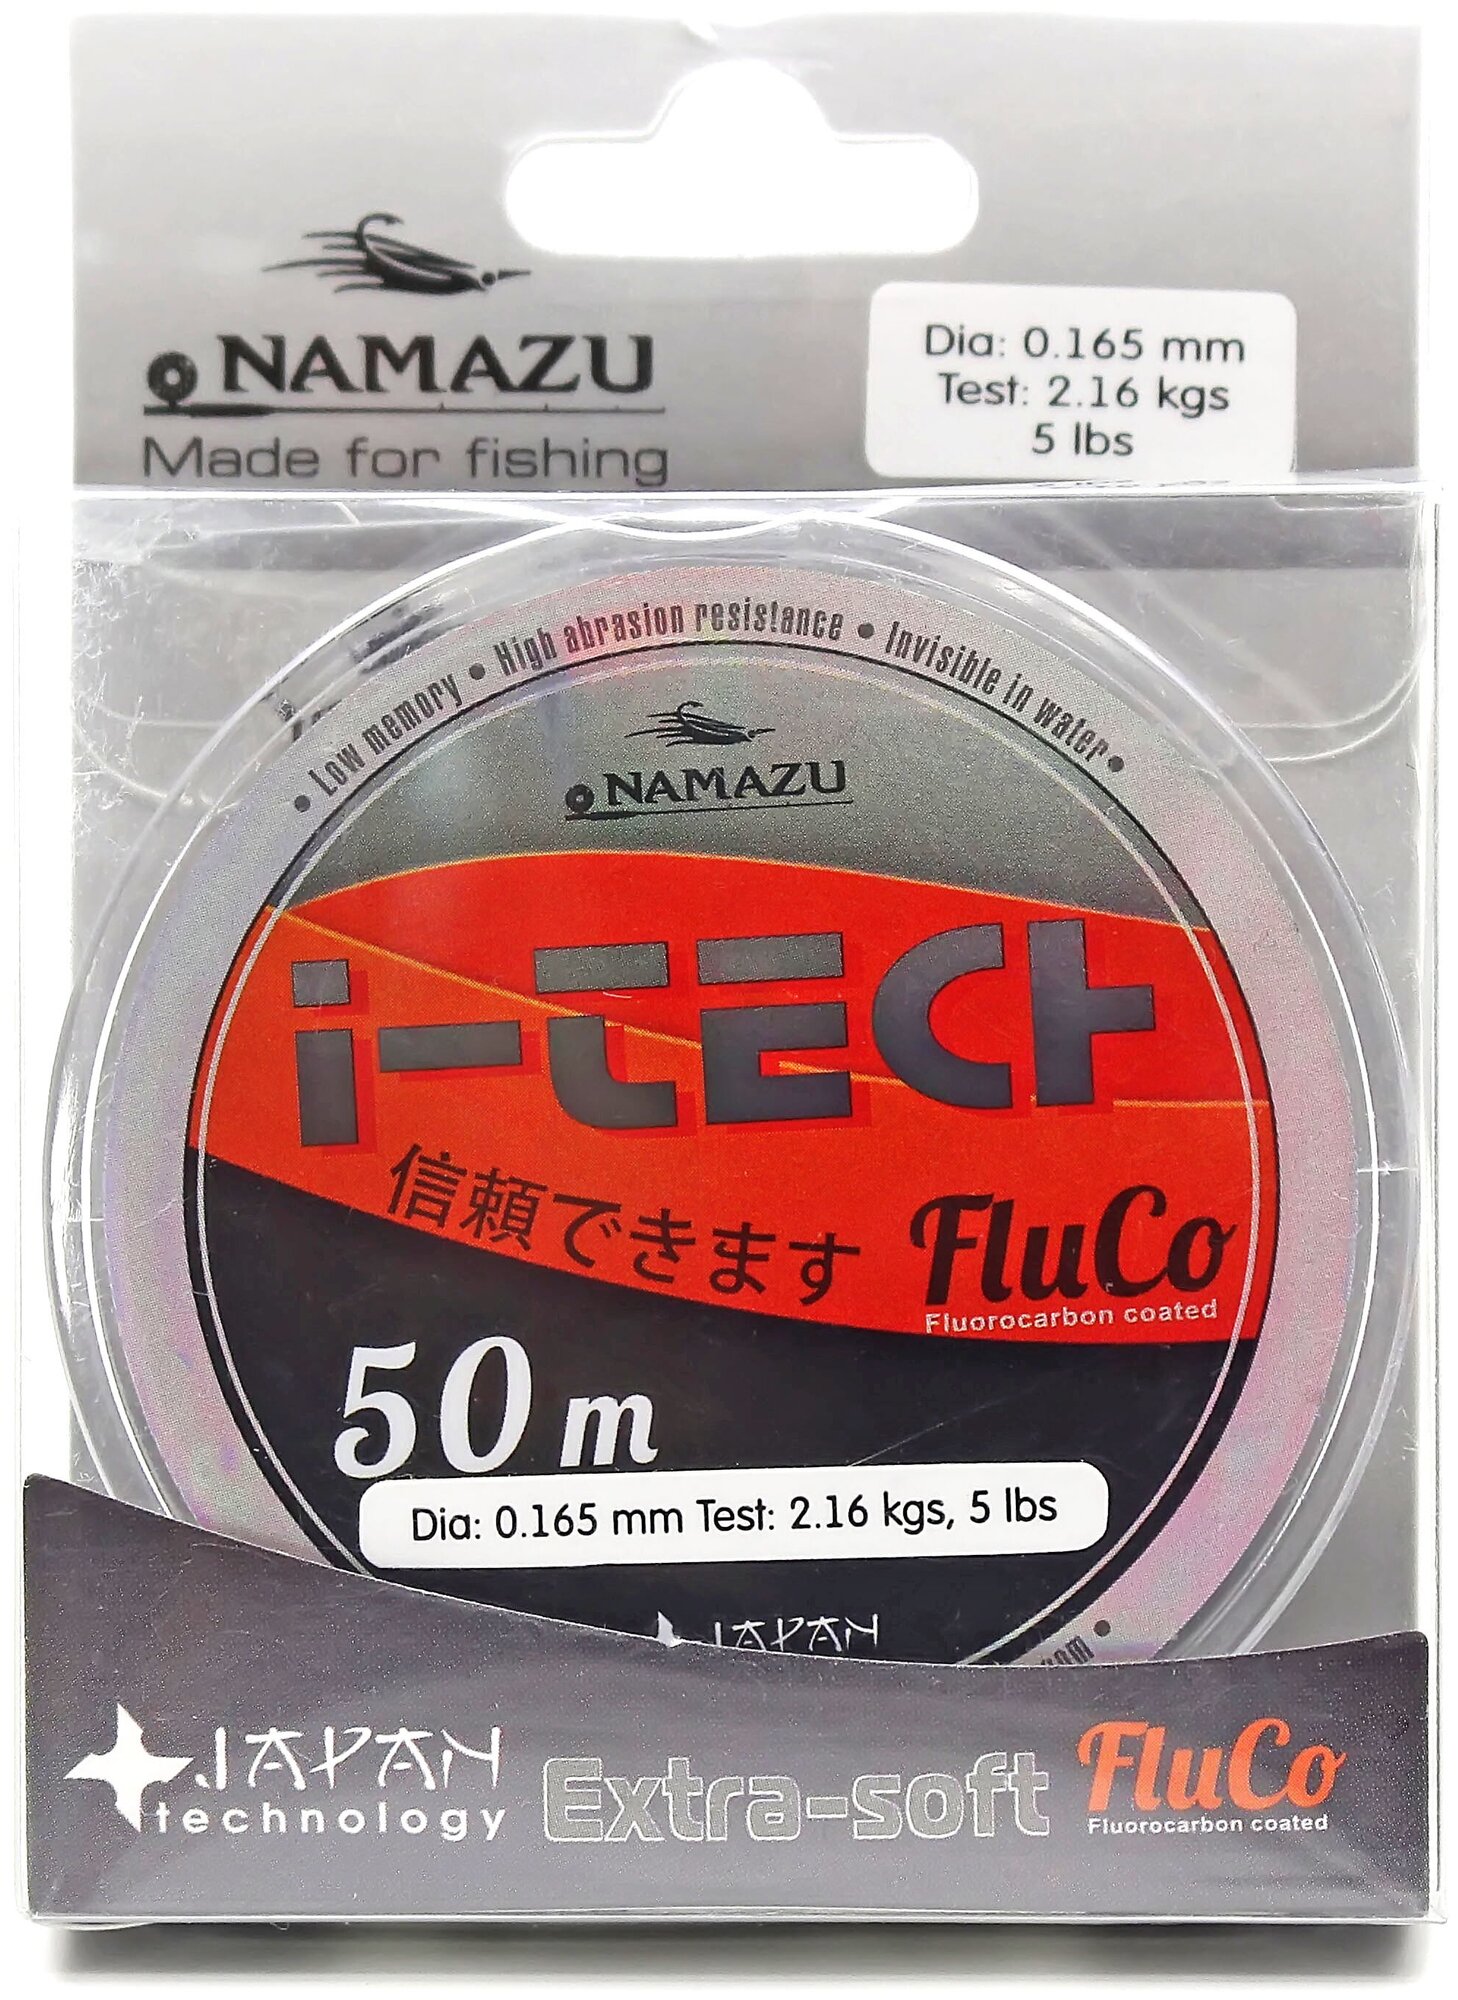 Флюорокарбоновая леска для рыбалки Namazu "I-Tech Fluco" 50 м